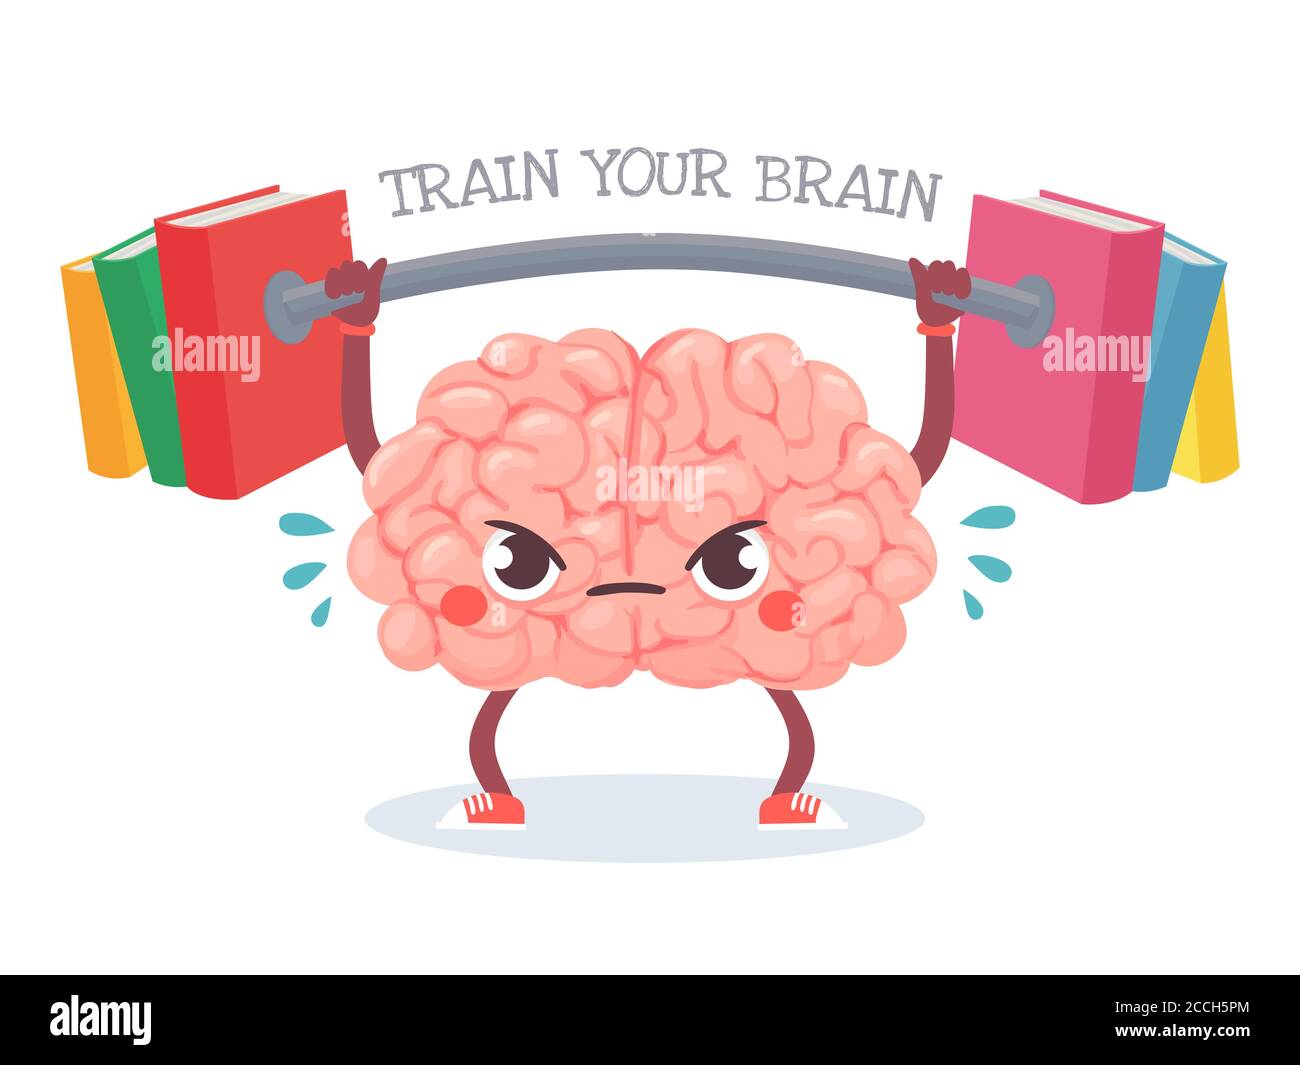 Gehirntraining. Cartoon Gehirn hebt Gewicht mit Büchern. Trainieren Sie Ihr Gedächtnis, Studium, Lernen und Wissensvermittlung Vektor-Konzept Stock Vektor